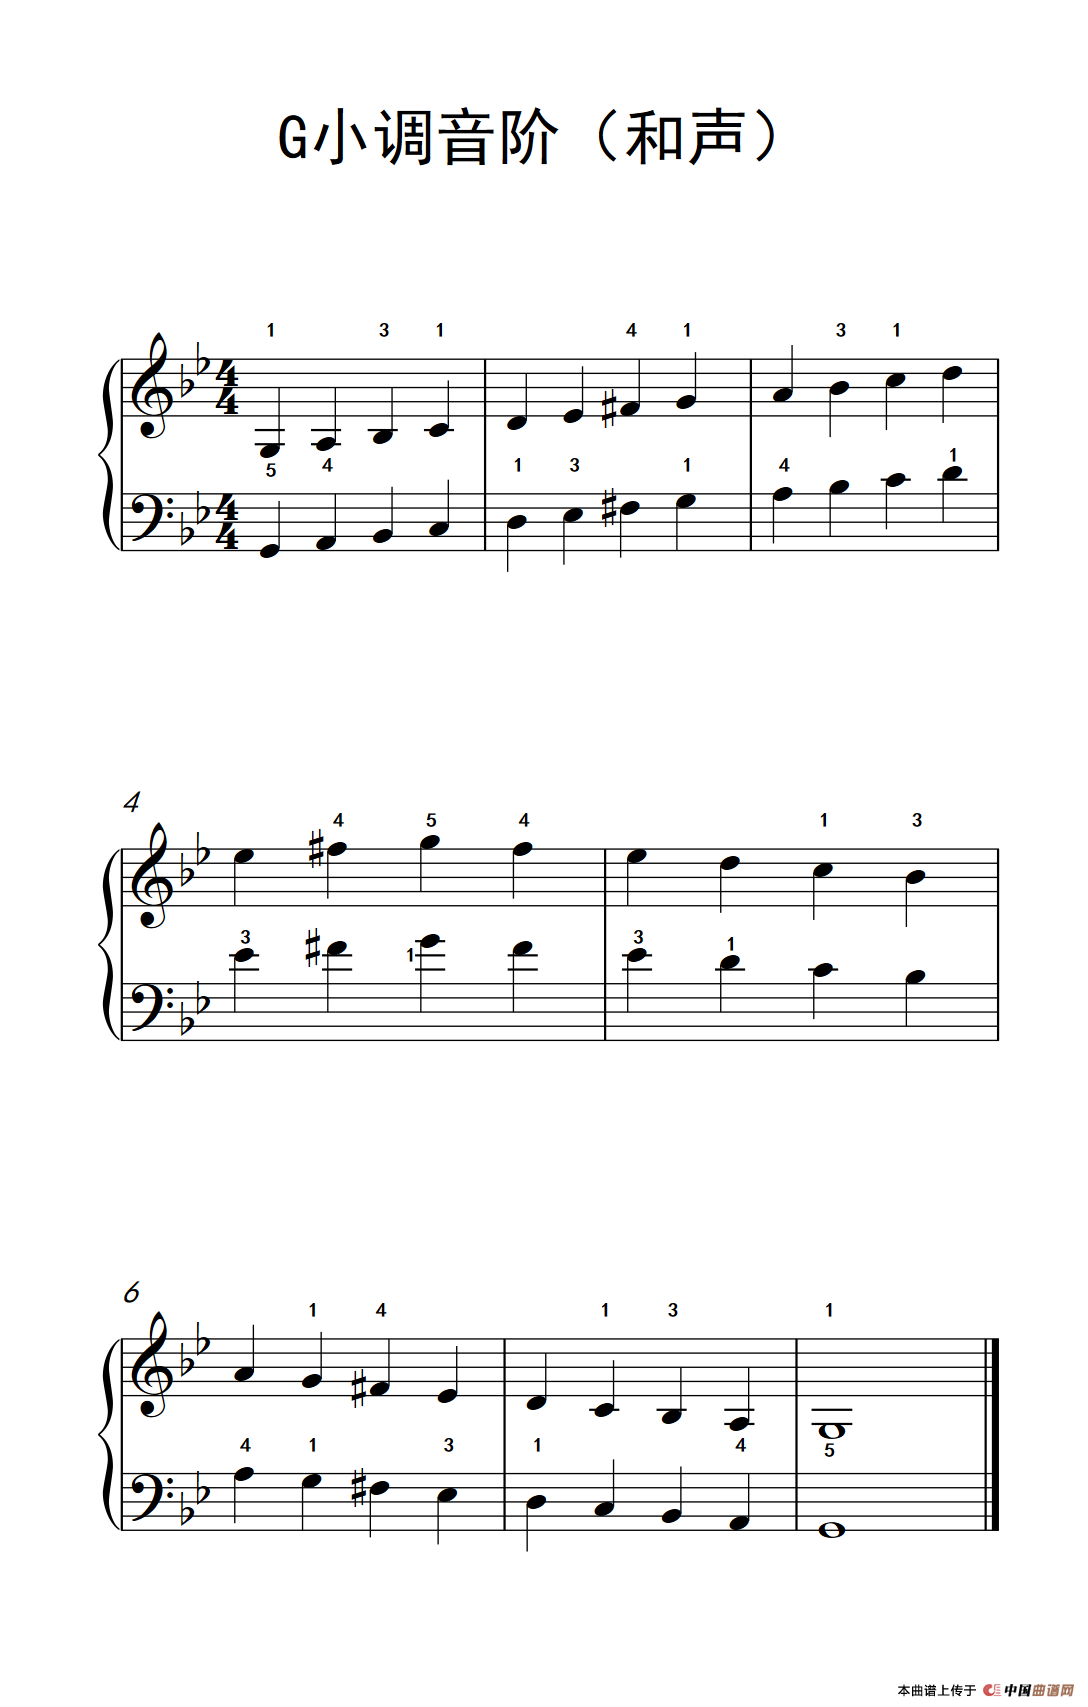 《G小调音阶》钢琴曲谱图分享